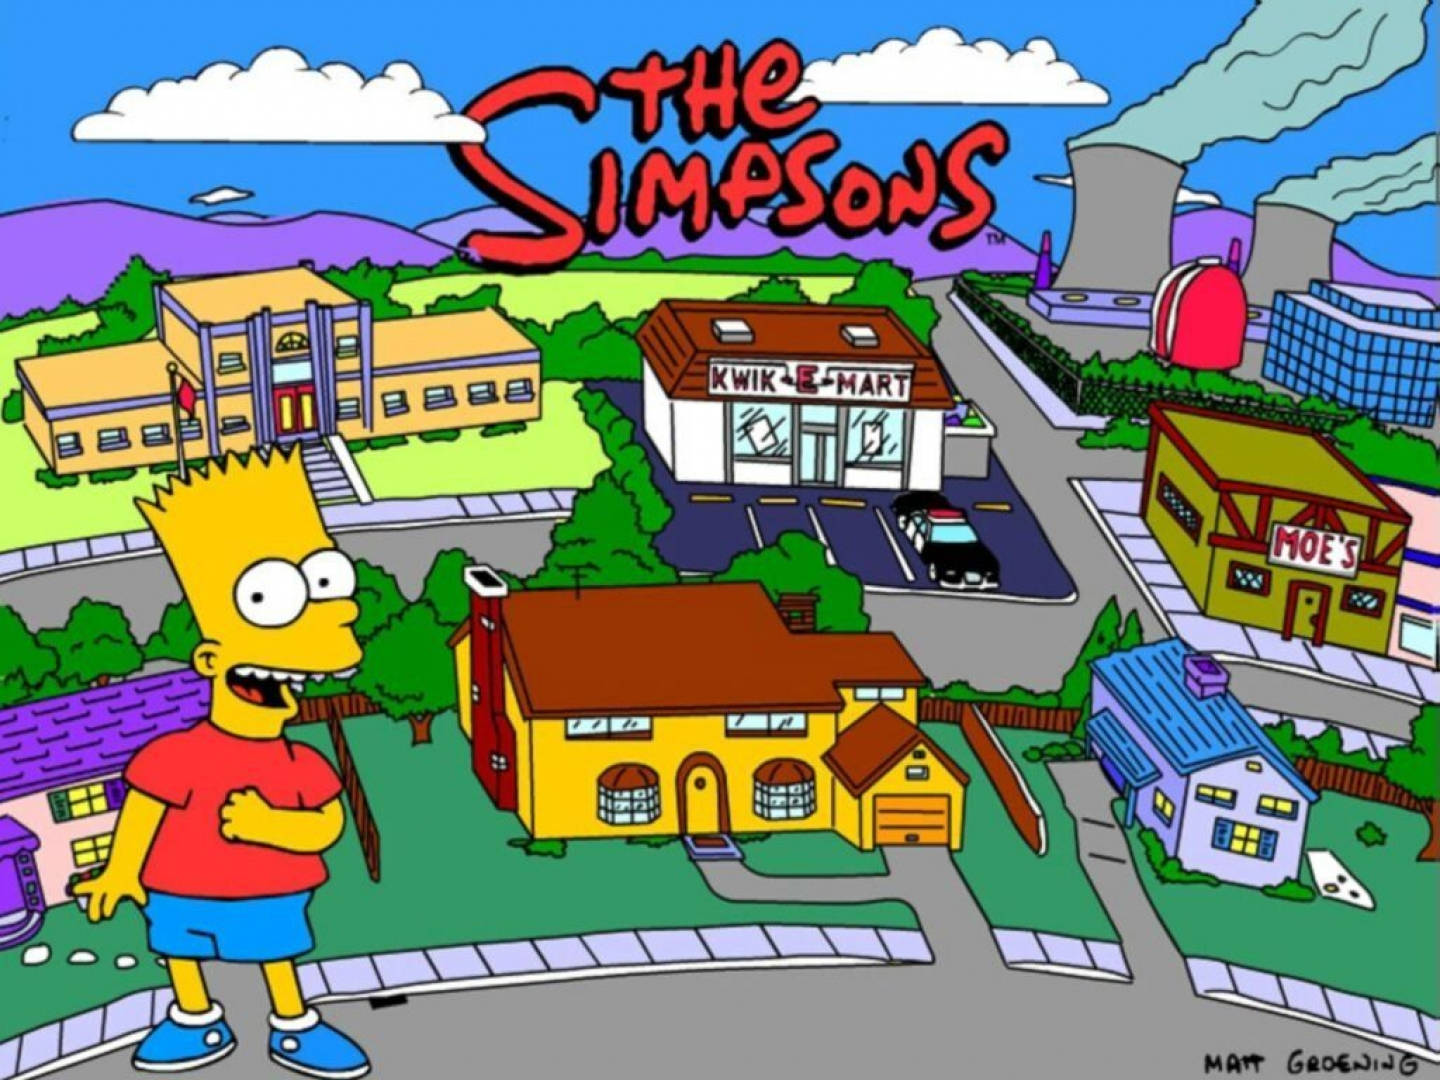 Pådin Dator Eller Mobiltelefon Kan Du Välja En Bakgrundsbild Med Bart Simpson Från The Simpsons. Wallpaper